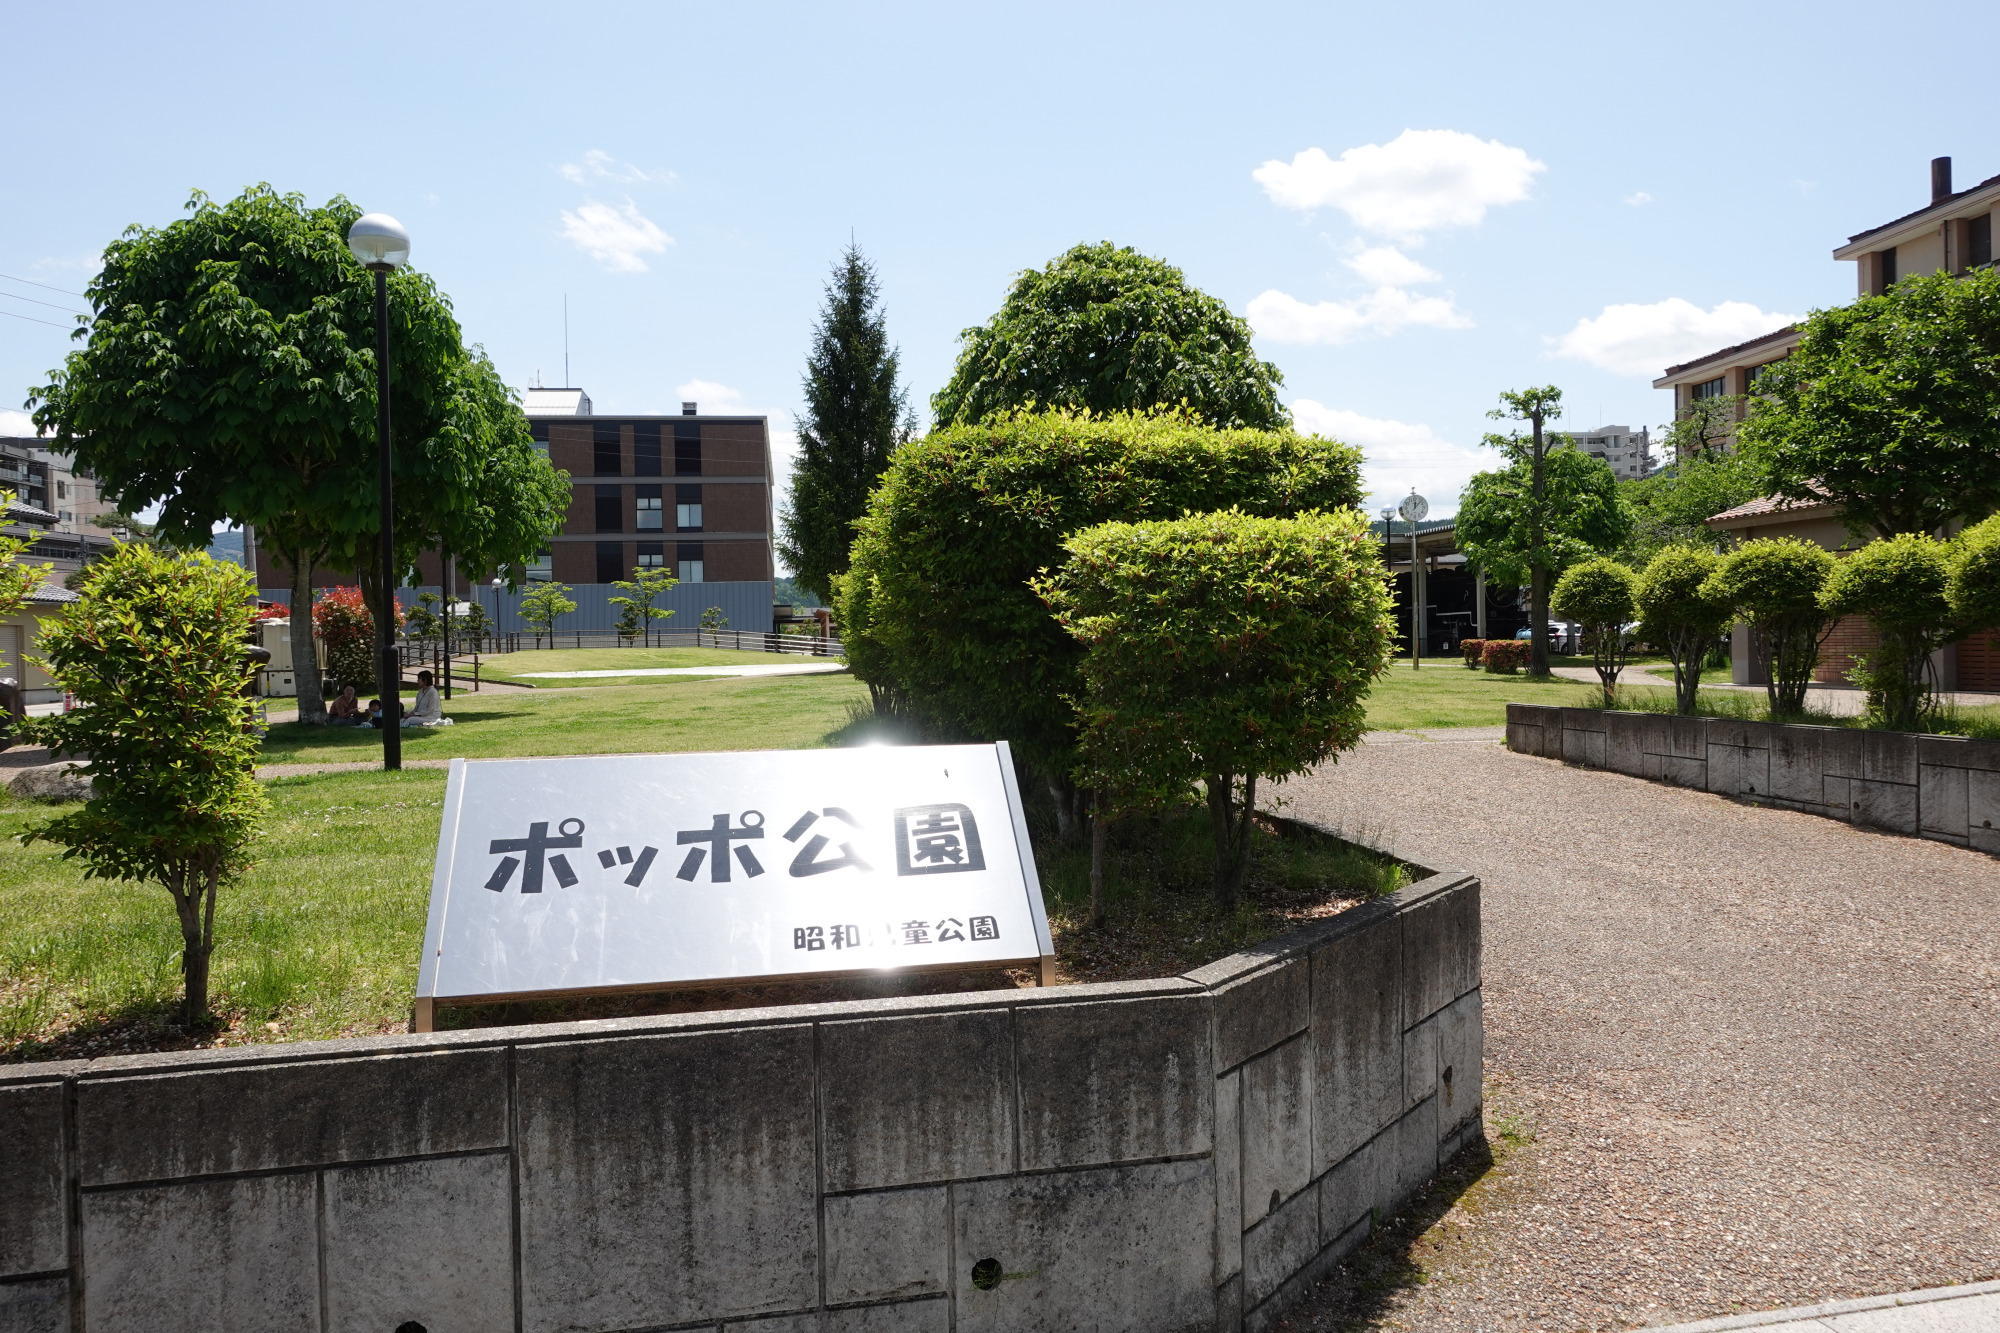 正式名は「昭和児童公園」。愛称の「ポッポ公園」は「汽車ぽっぽ」からつけられました。